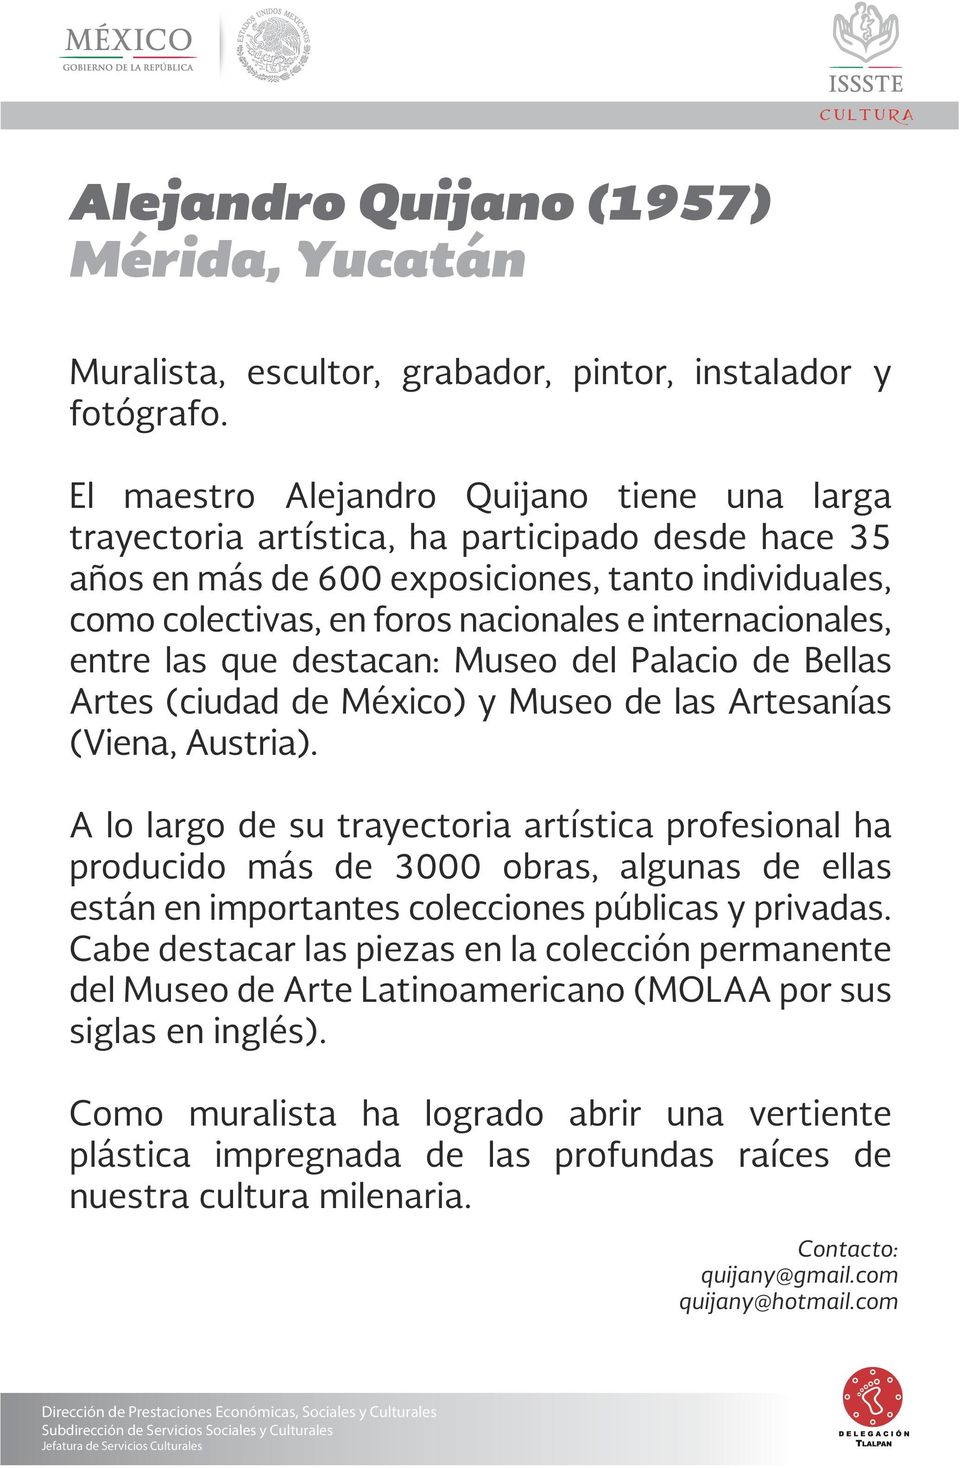 internacionales, entre las que destacan: Museo del Palacio de Bellas Artes (ciudad de México) y Museo de las Artesanías (Viena, Austria).